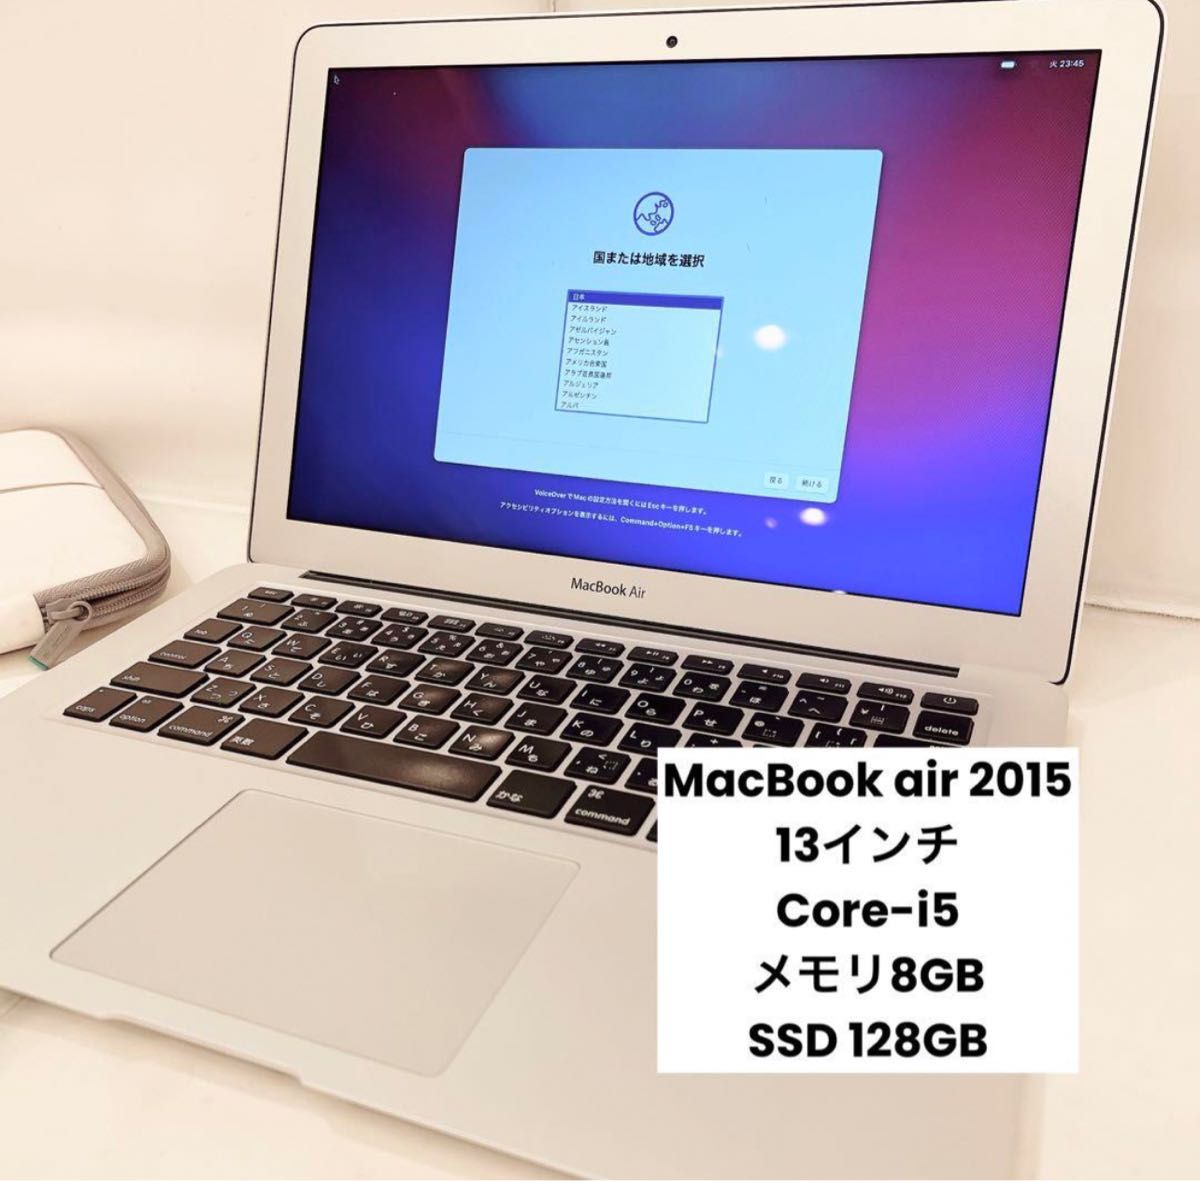 特急 MacBook Air 2015 SSD128GB/メモリ4GB | kotekservice.com